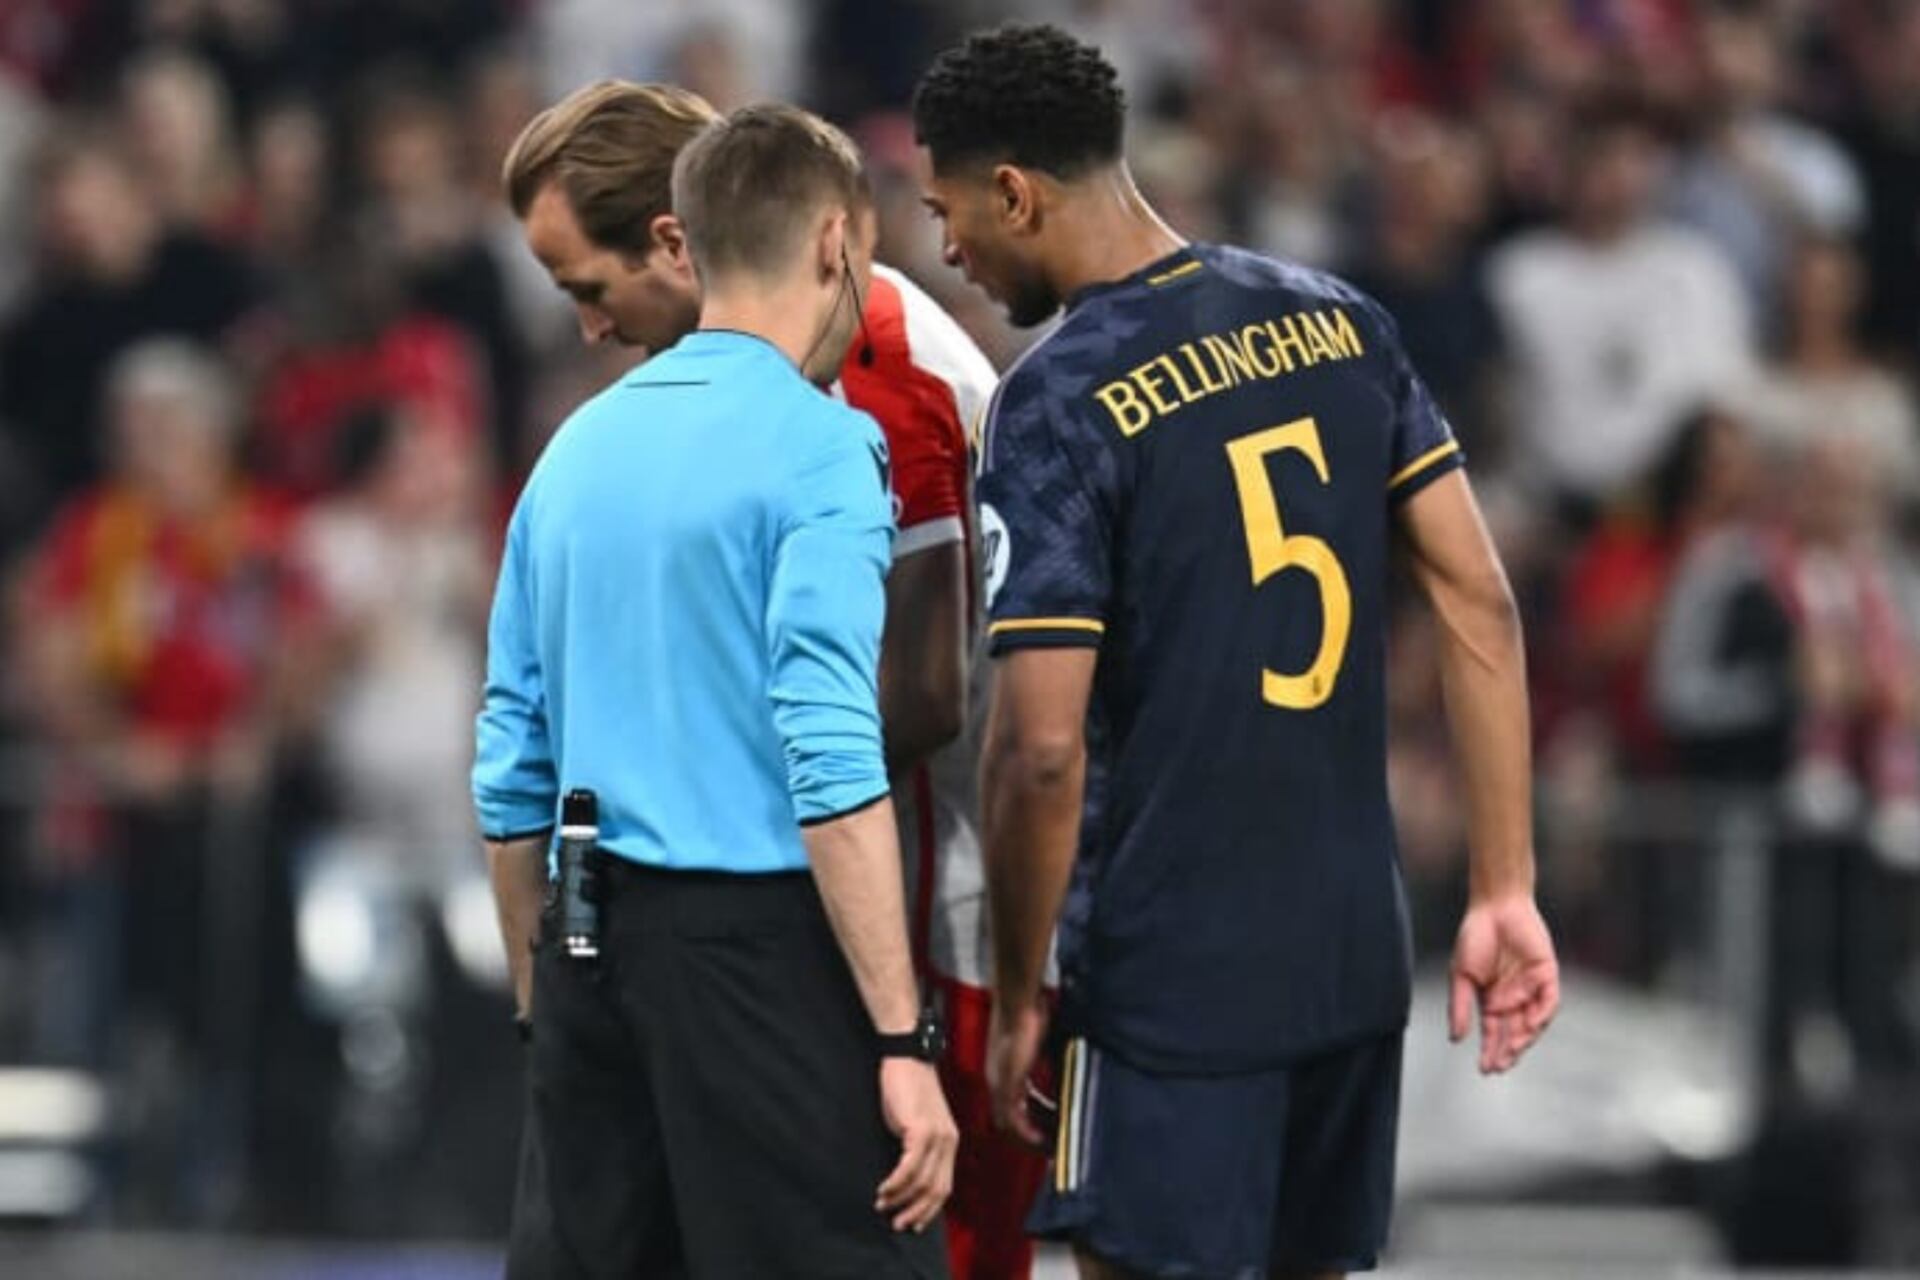 (VIDEO) No se vio en TV, esto dijo Bellingham para intimidar a Kane en el penalti